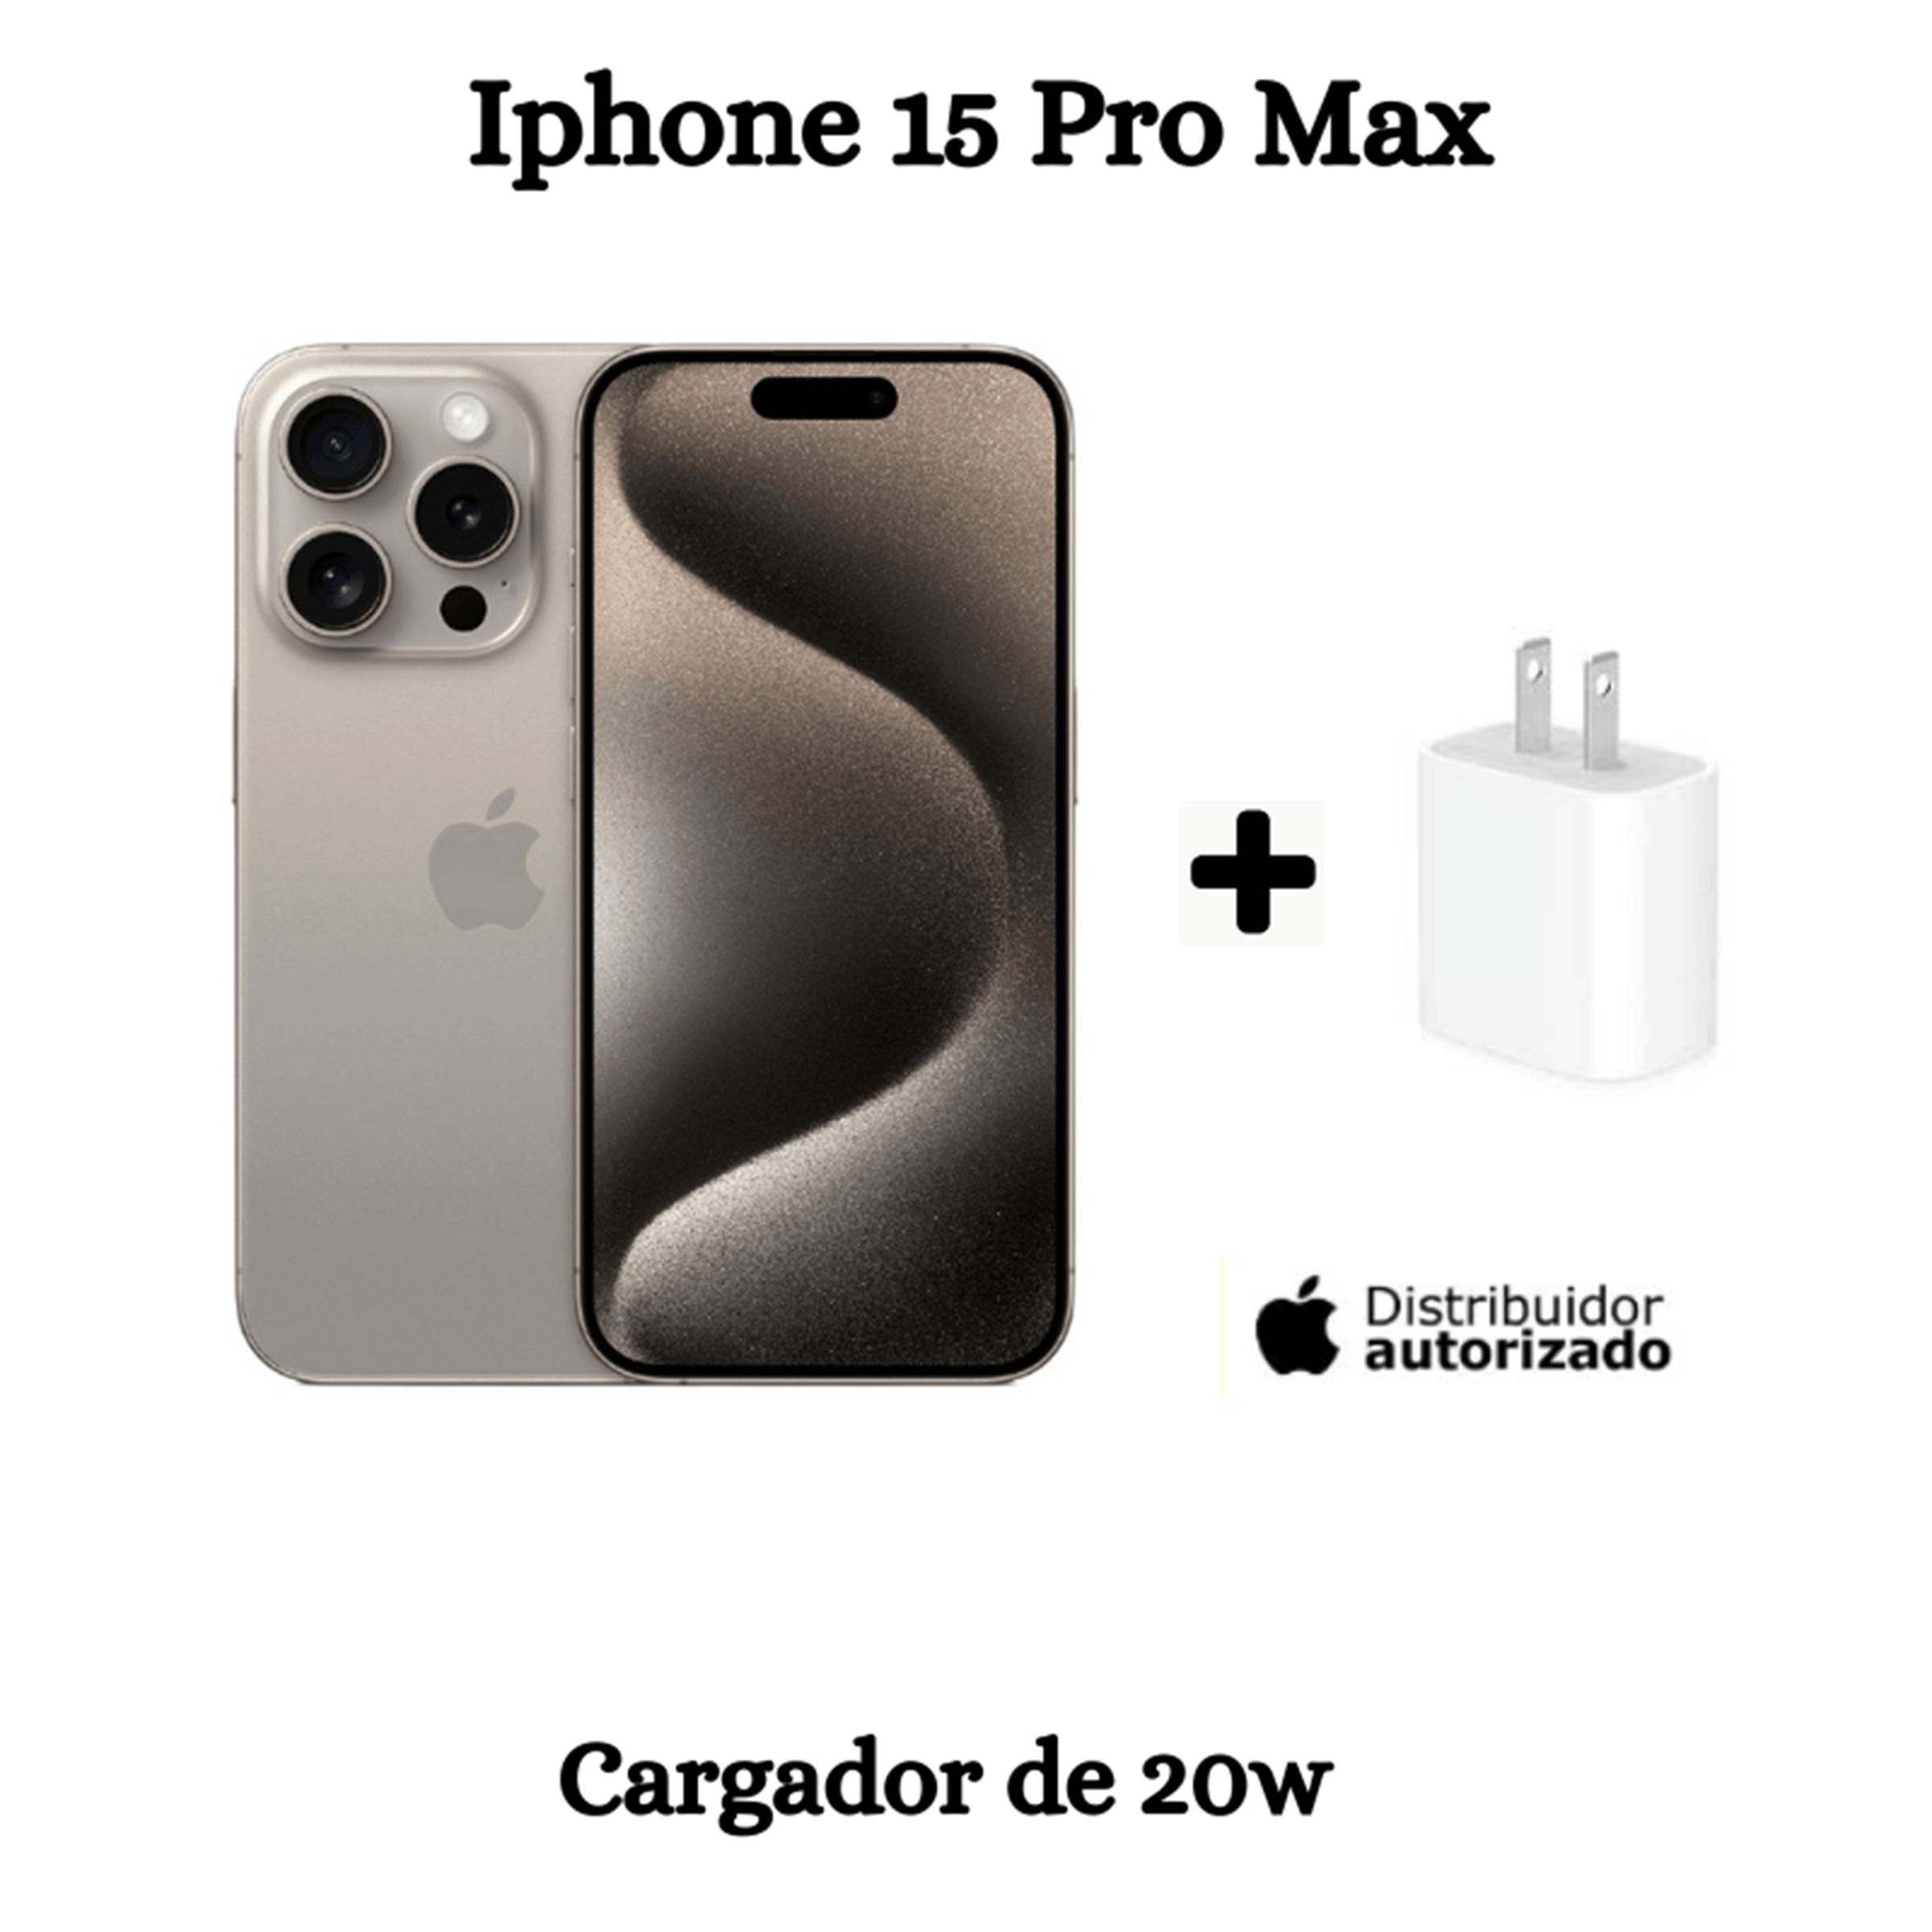 iPhone 15 Pro Max 256GB + Cargador - NATURAL TITANIUM